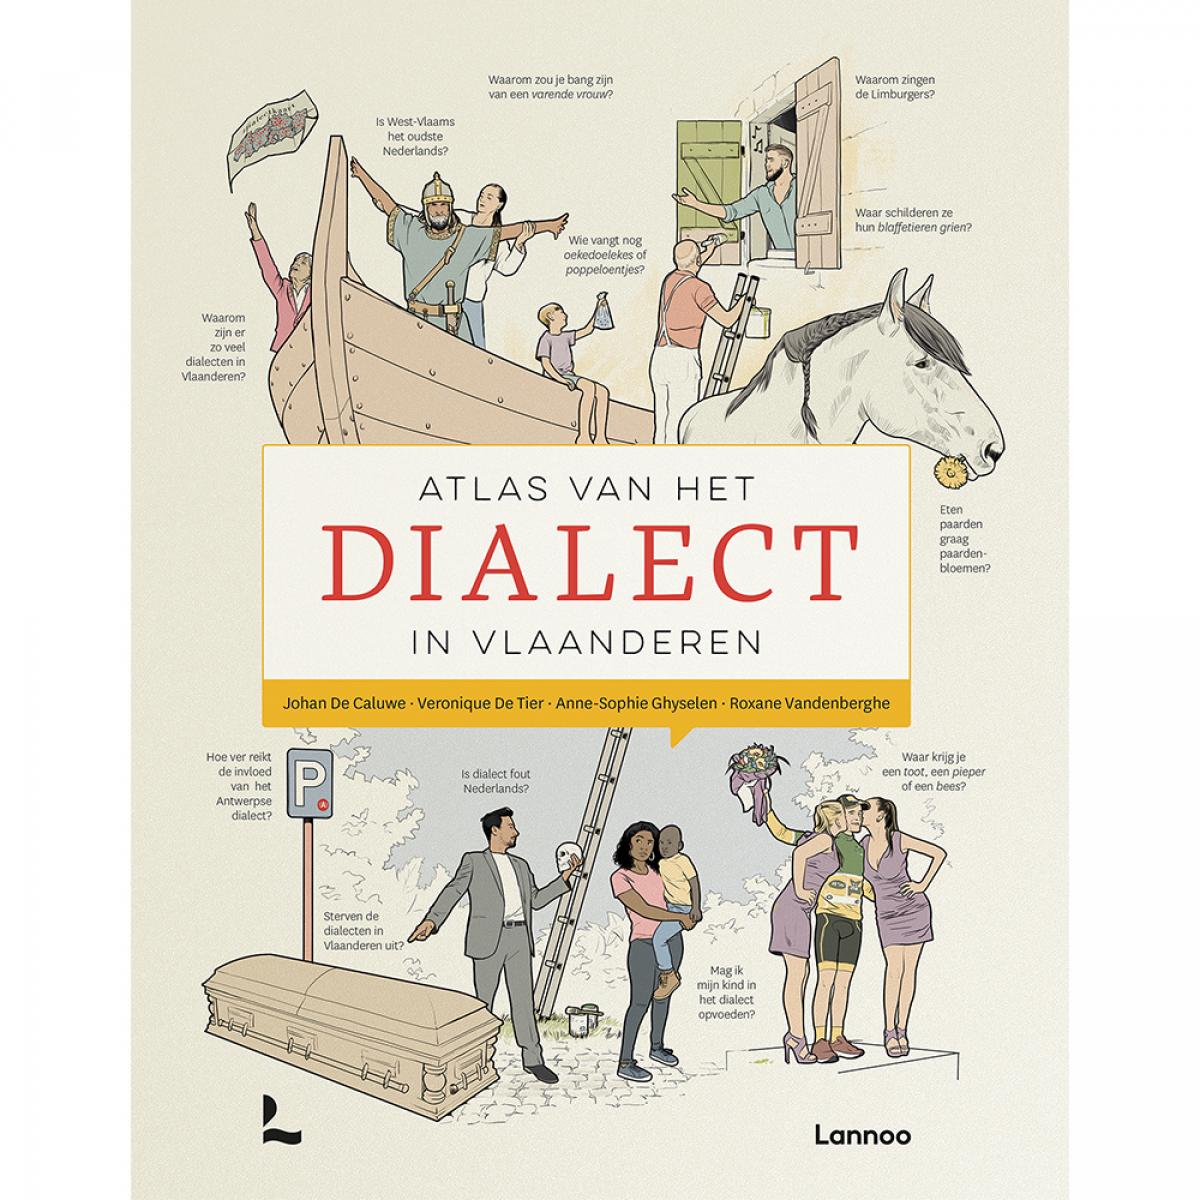 Atlas van het dialect in Vlaanderen